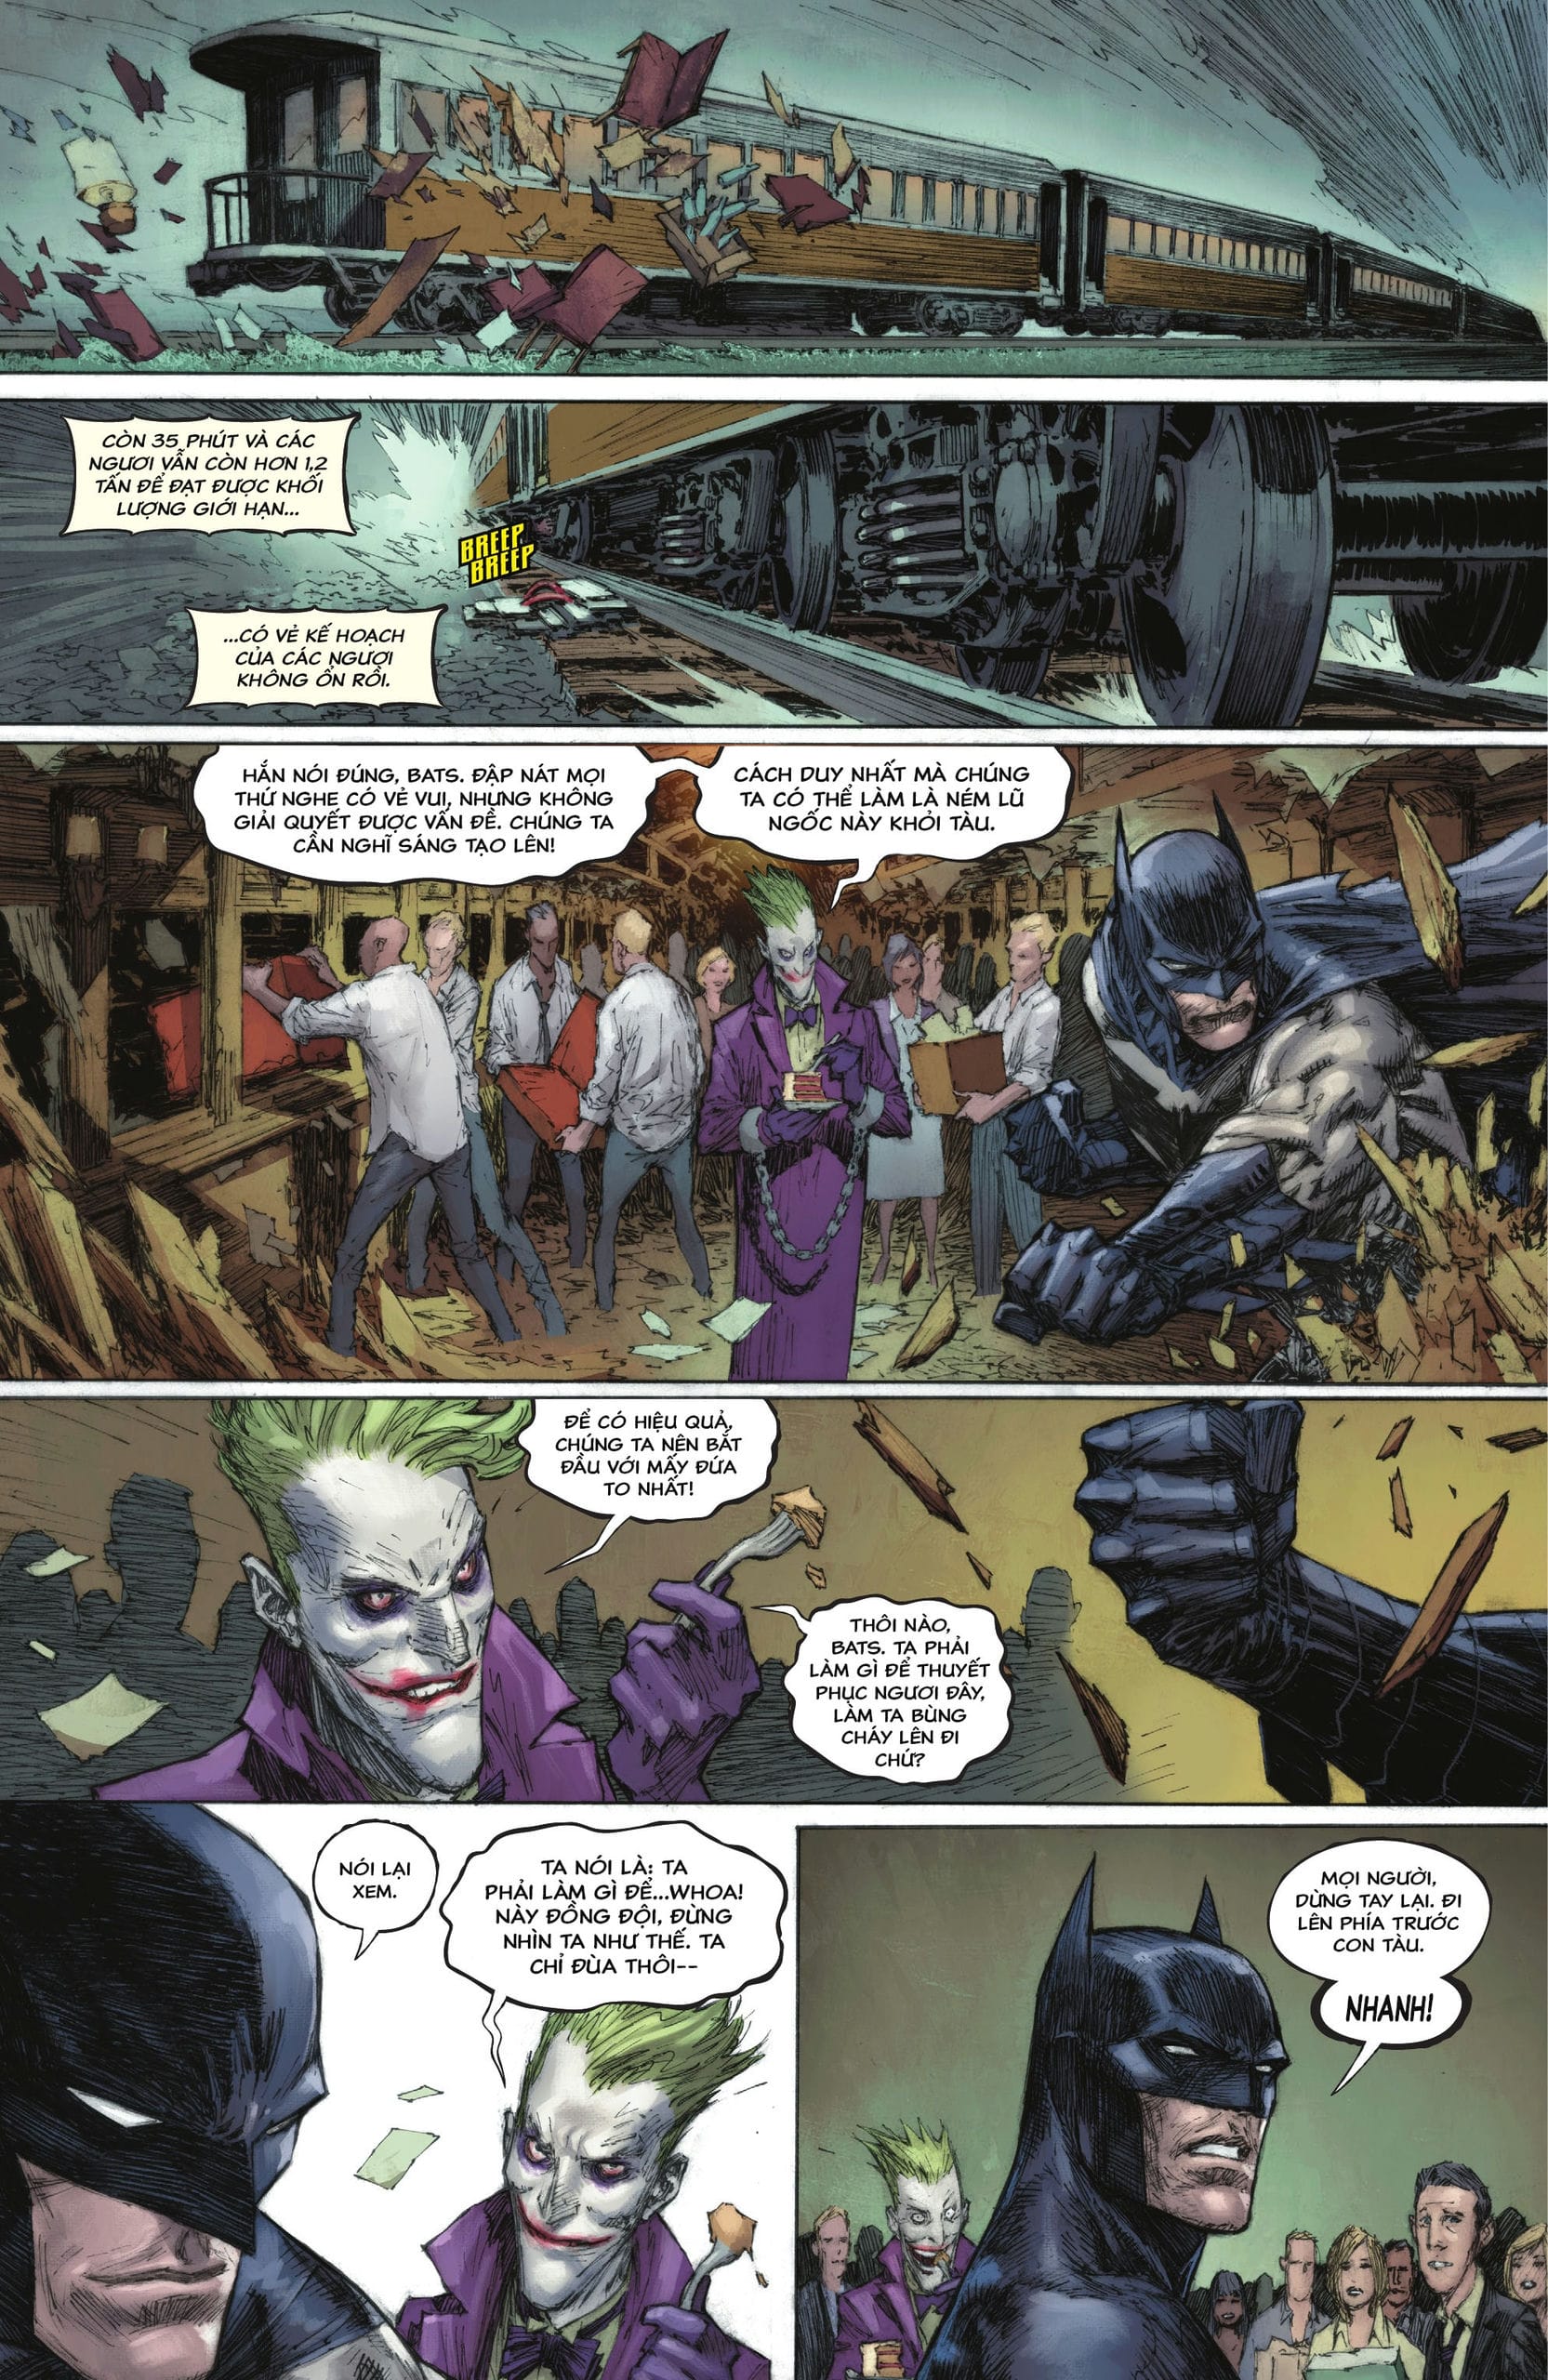 https://langgeek.net/wp-content/webpc-passthru.php?src=https://langgeek.net/wp-content/uploads/2023/02/Batman-The-Joker-The-Deadly-Duo-2022-004-016.jpg&nocache=1